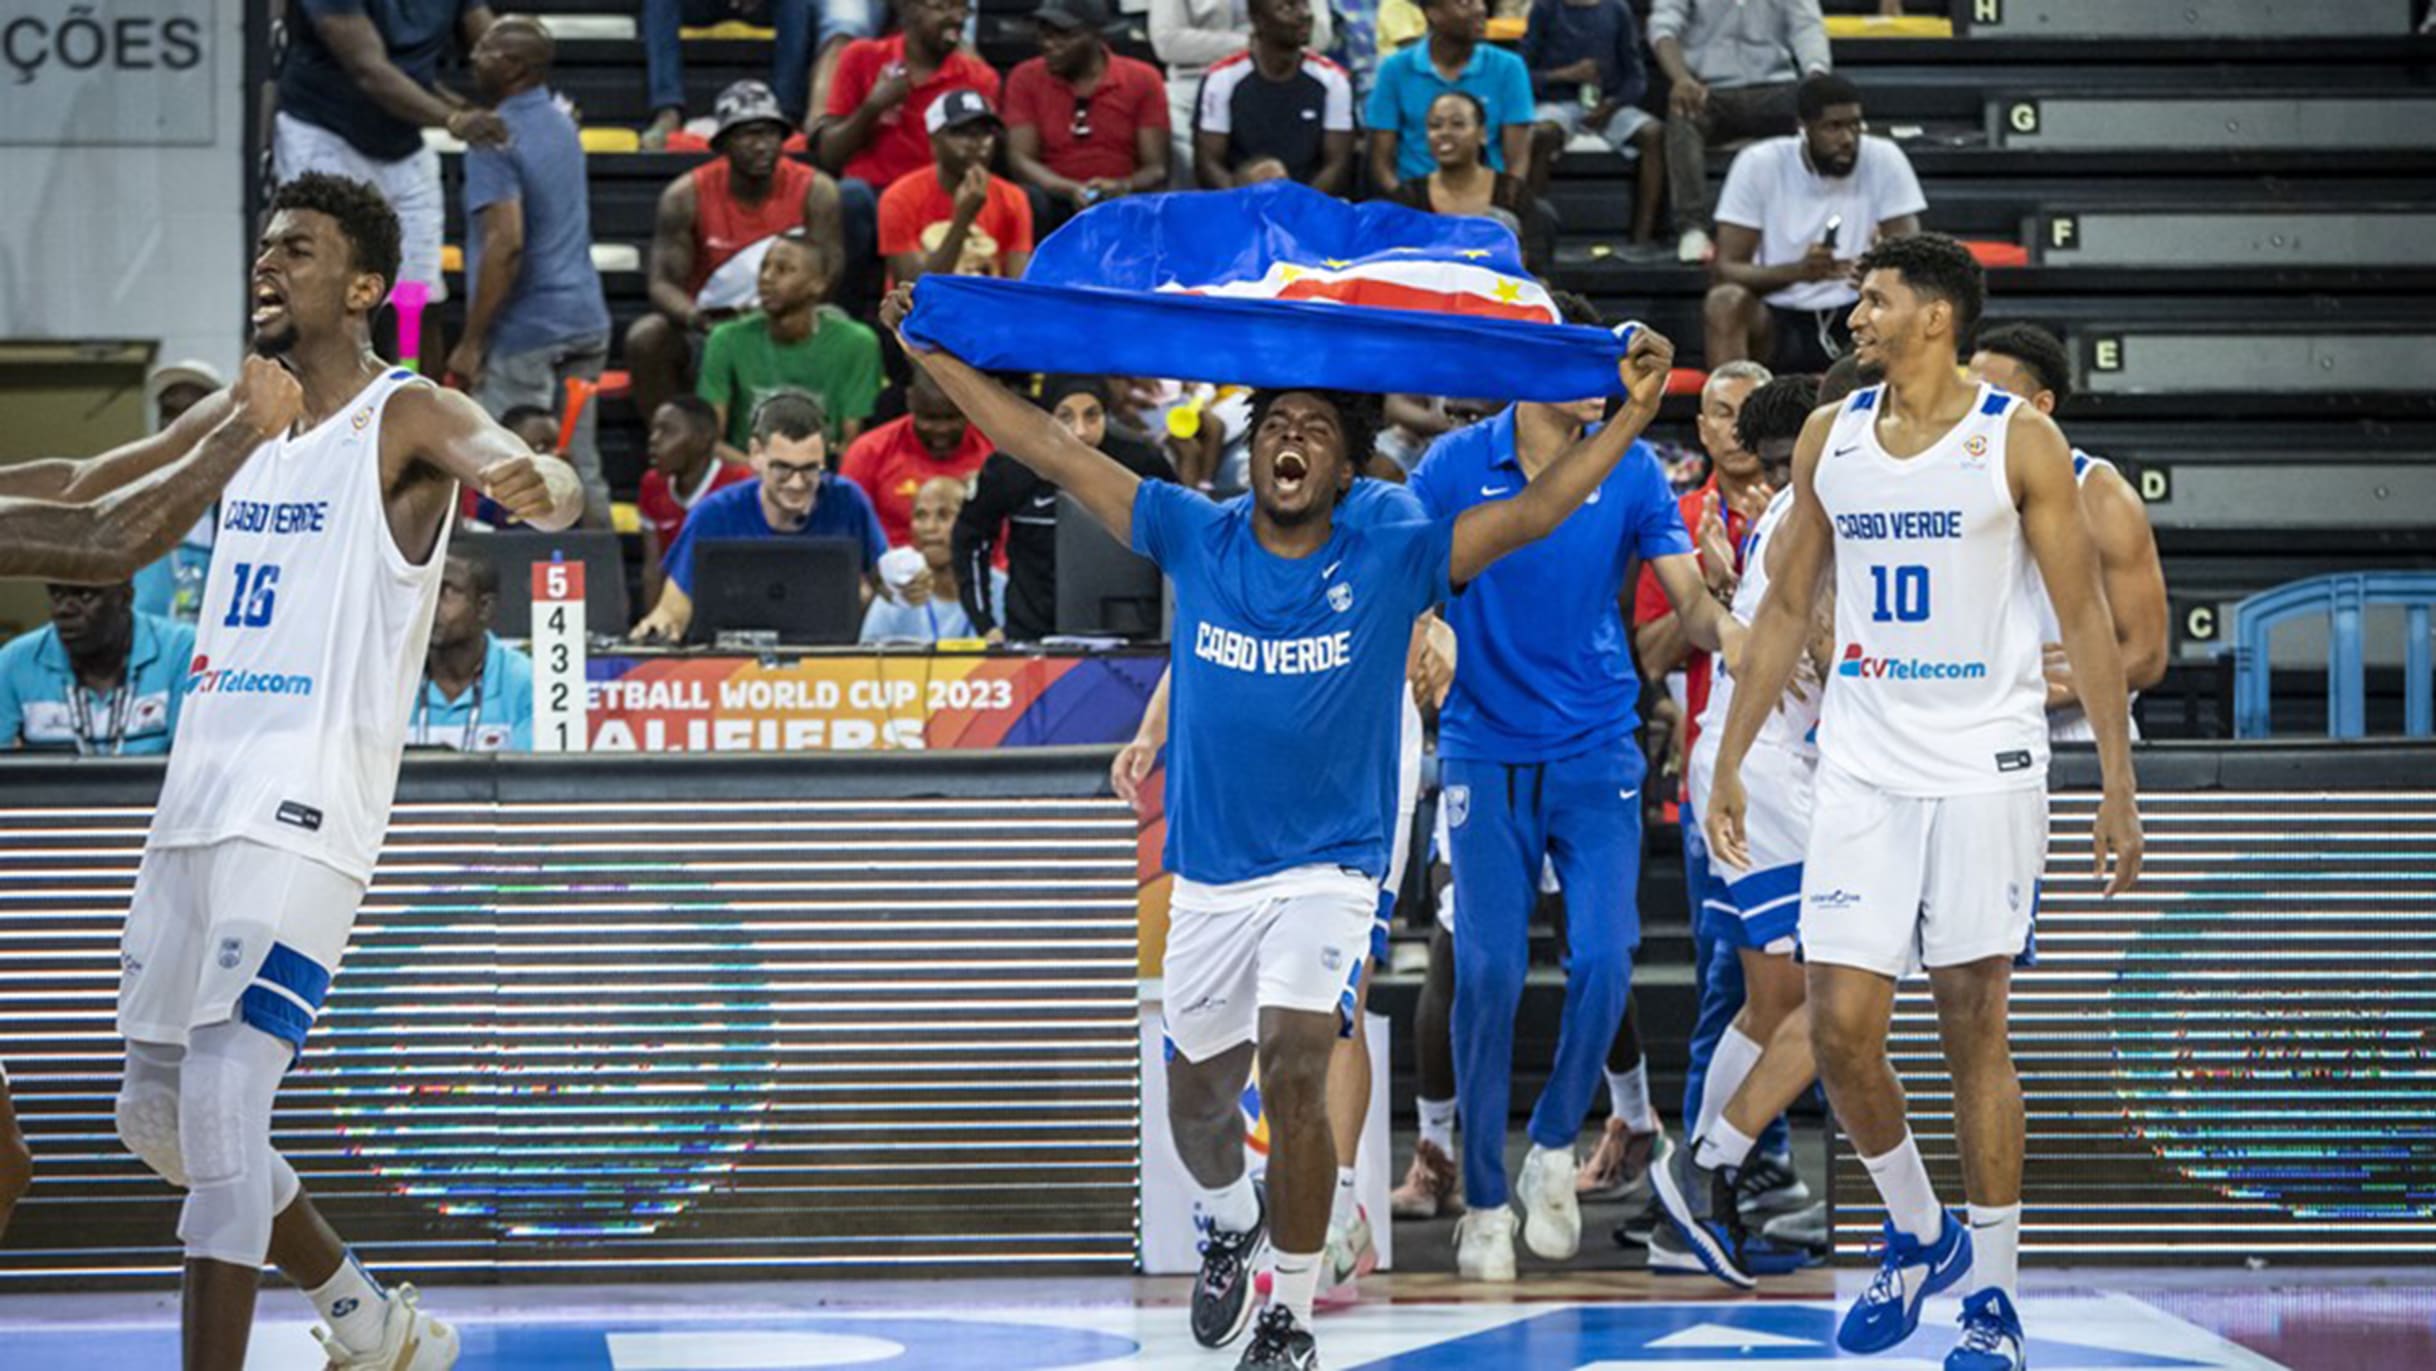 Basquetebol: Angola e Cabo Verde iniciam aventura no Mundial